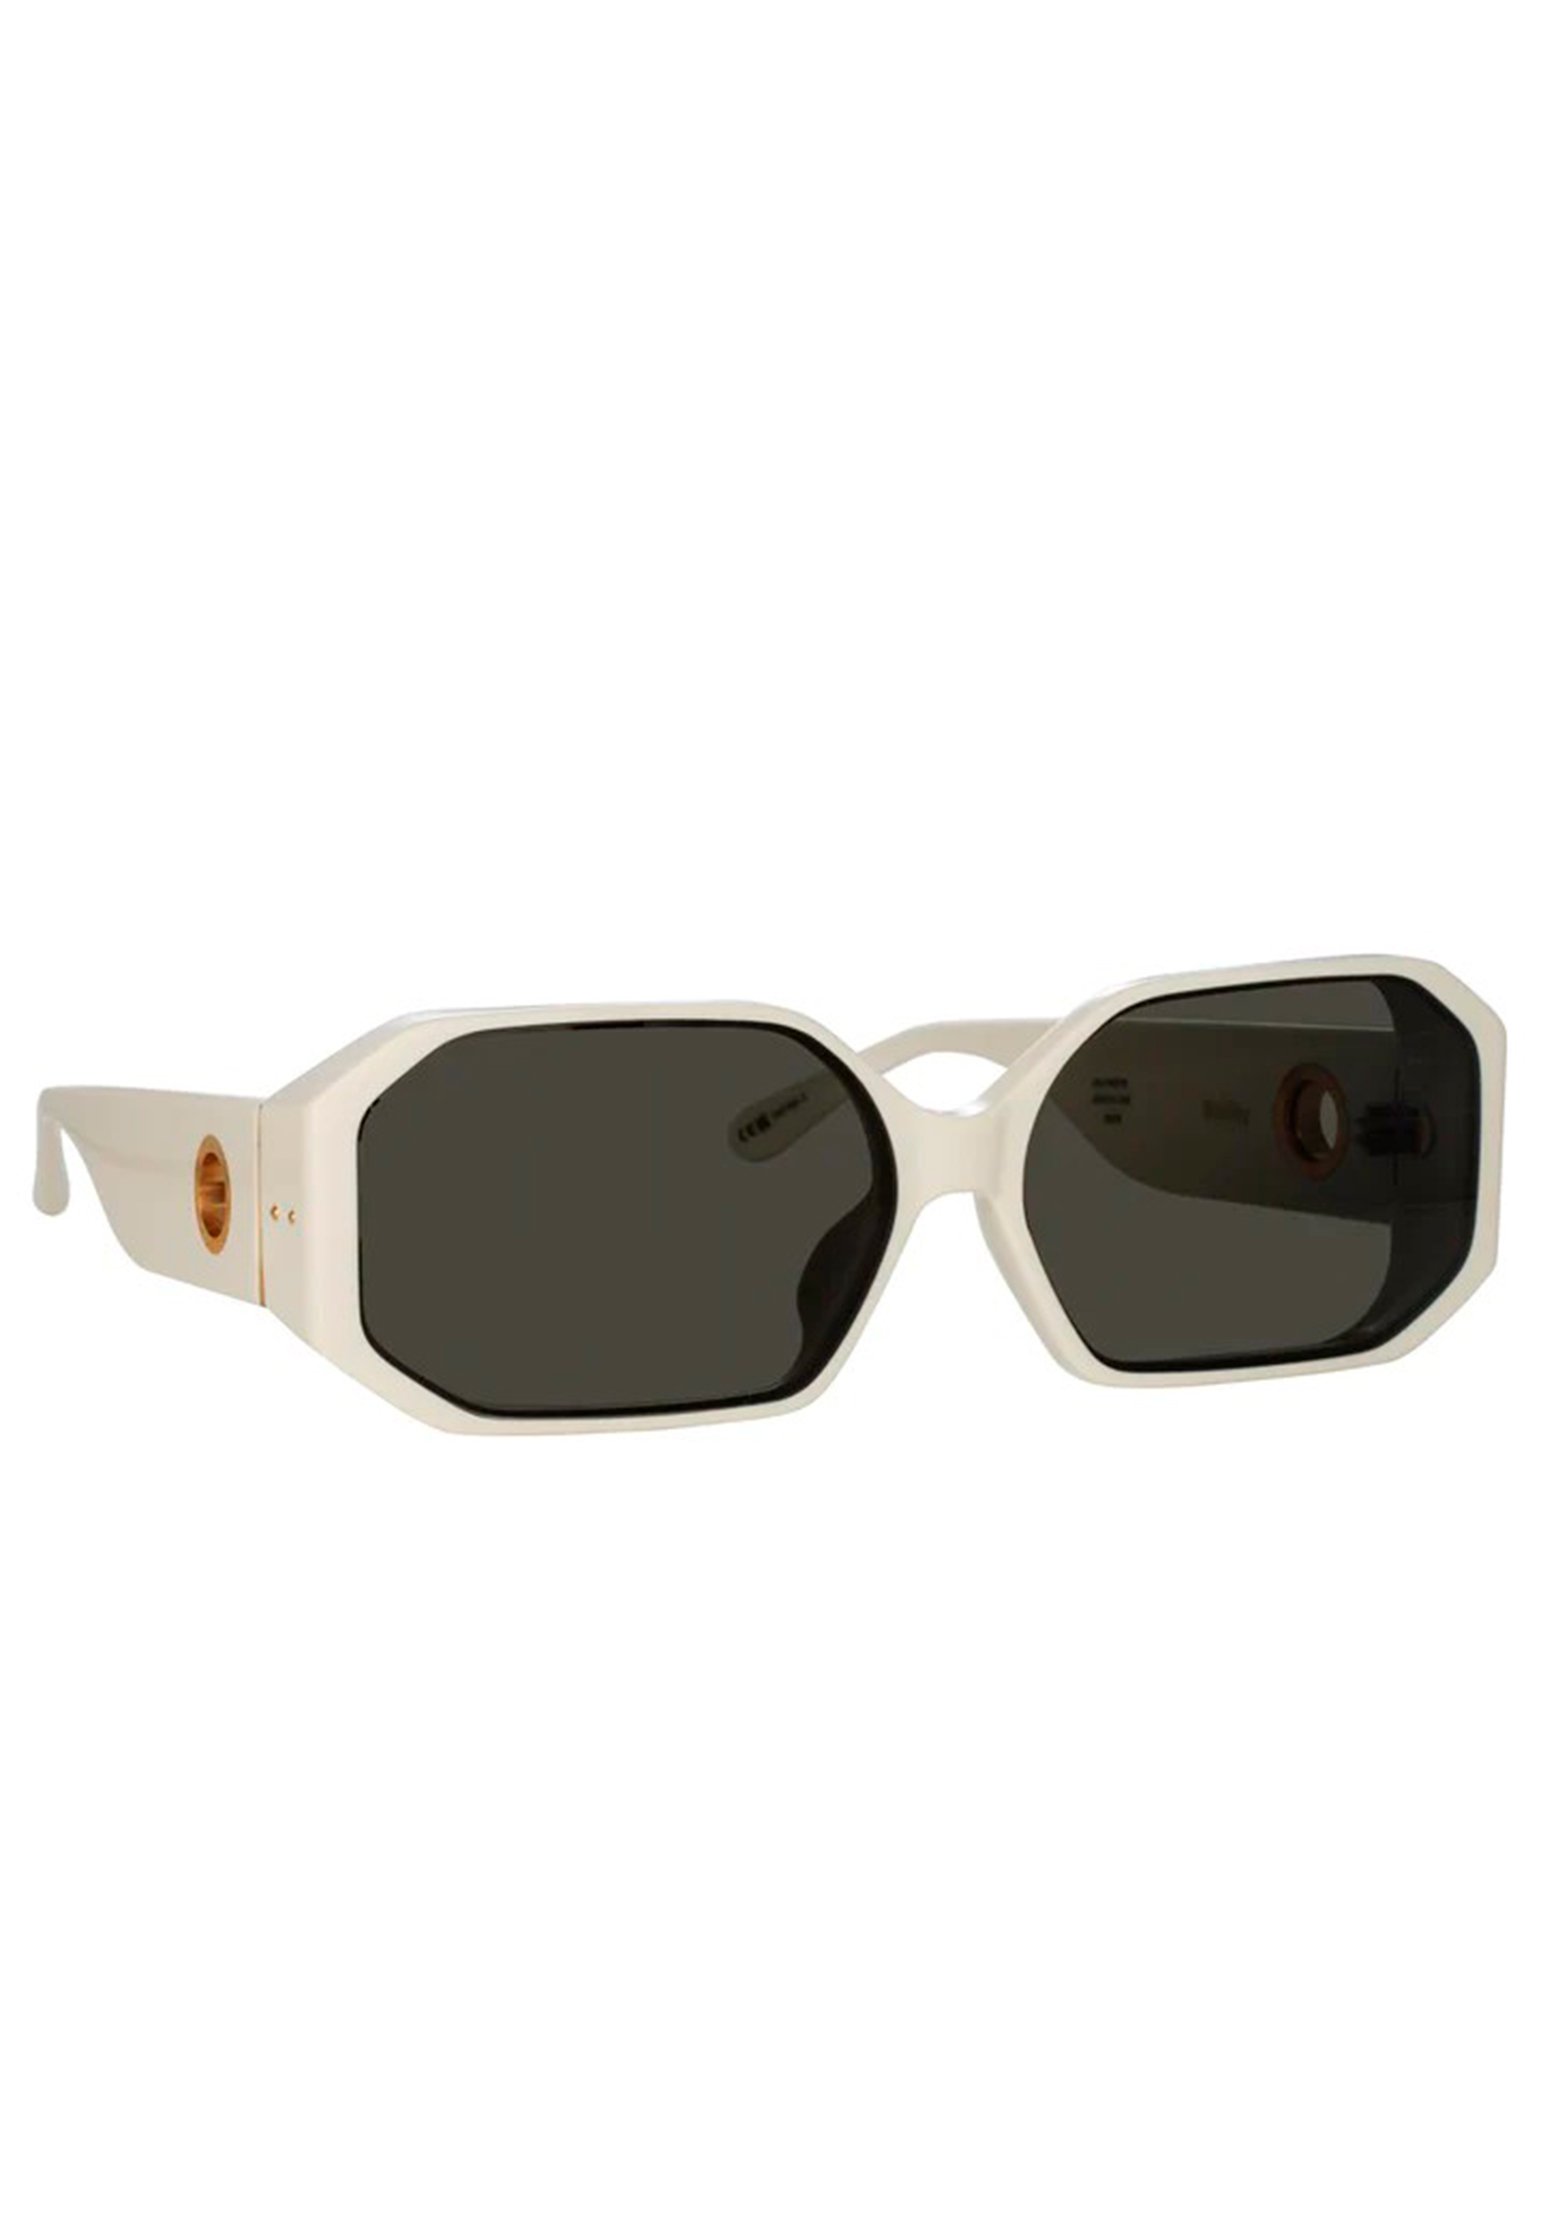 Sunglasses LINDA FARROW Color: white (Code: 4020) in online store Allure